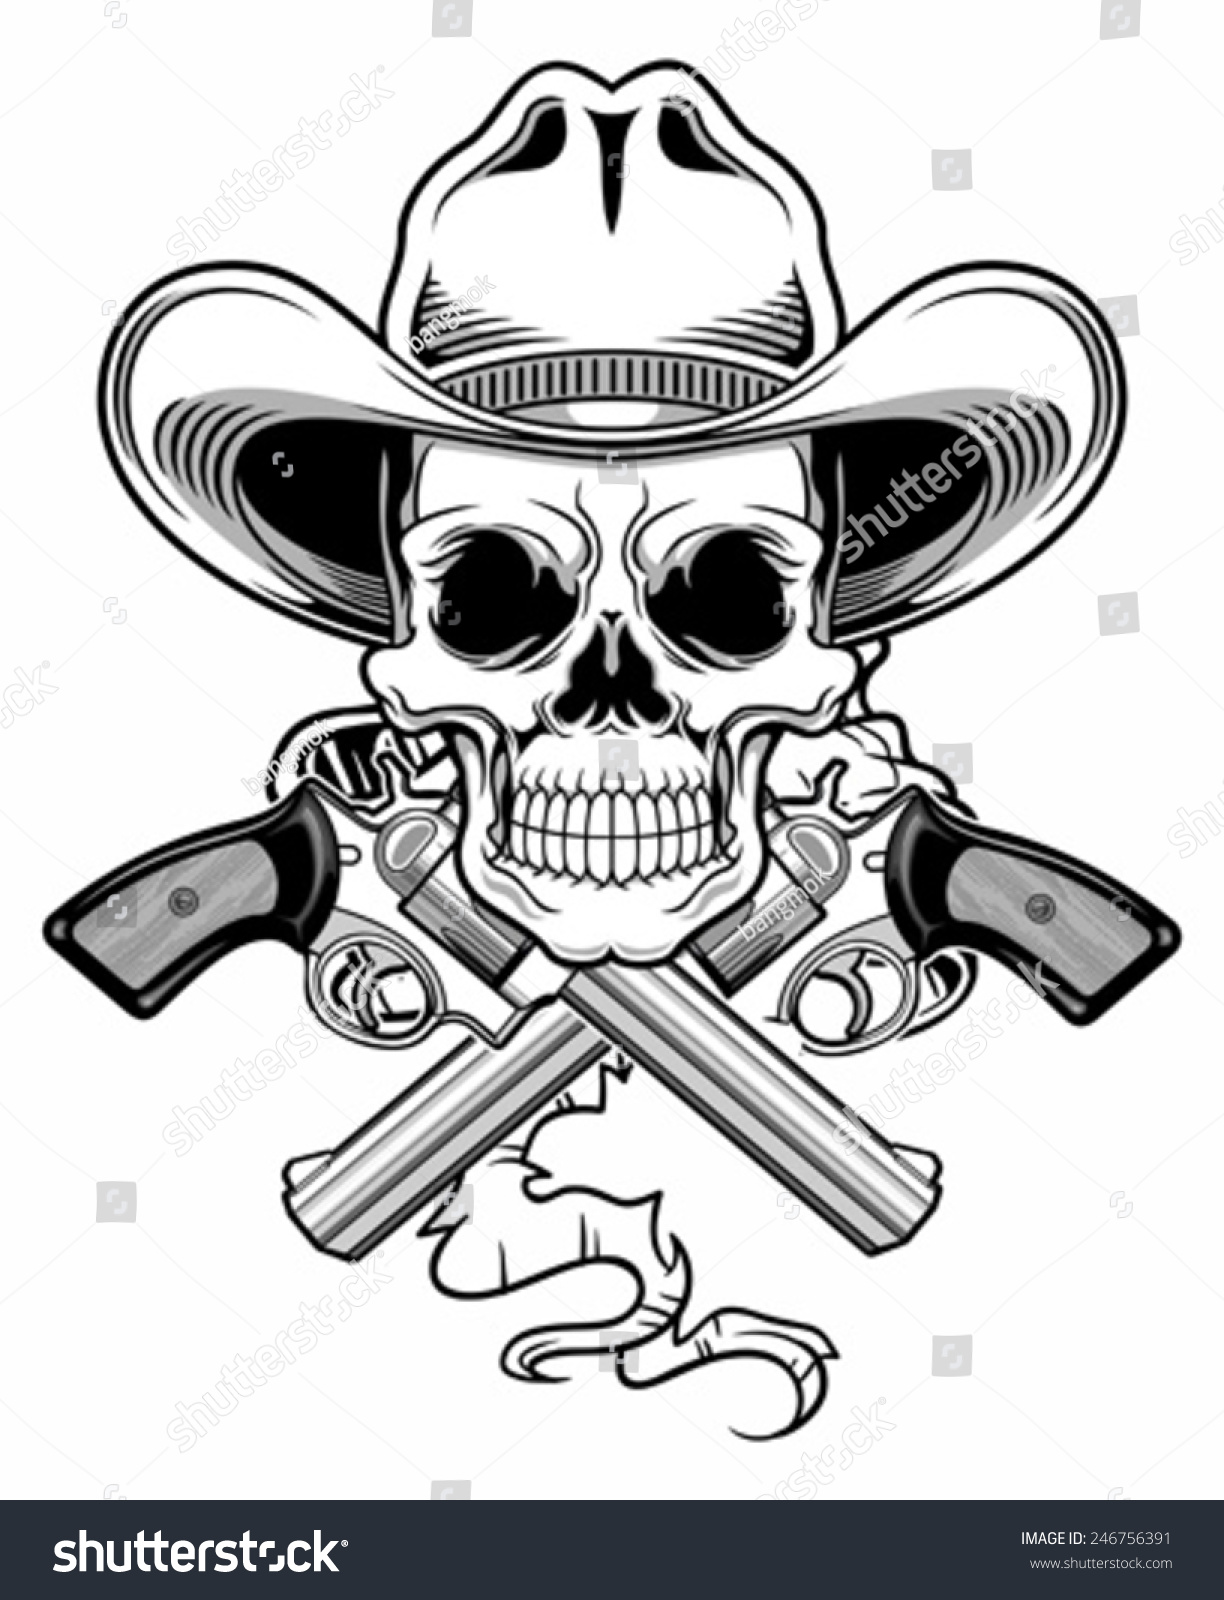 Black White Cowboy Skull Stock Vector 246756391 - Shutterstock